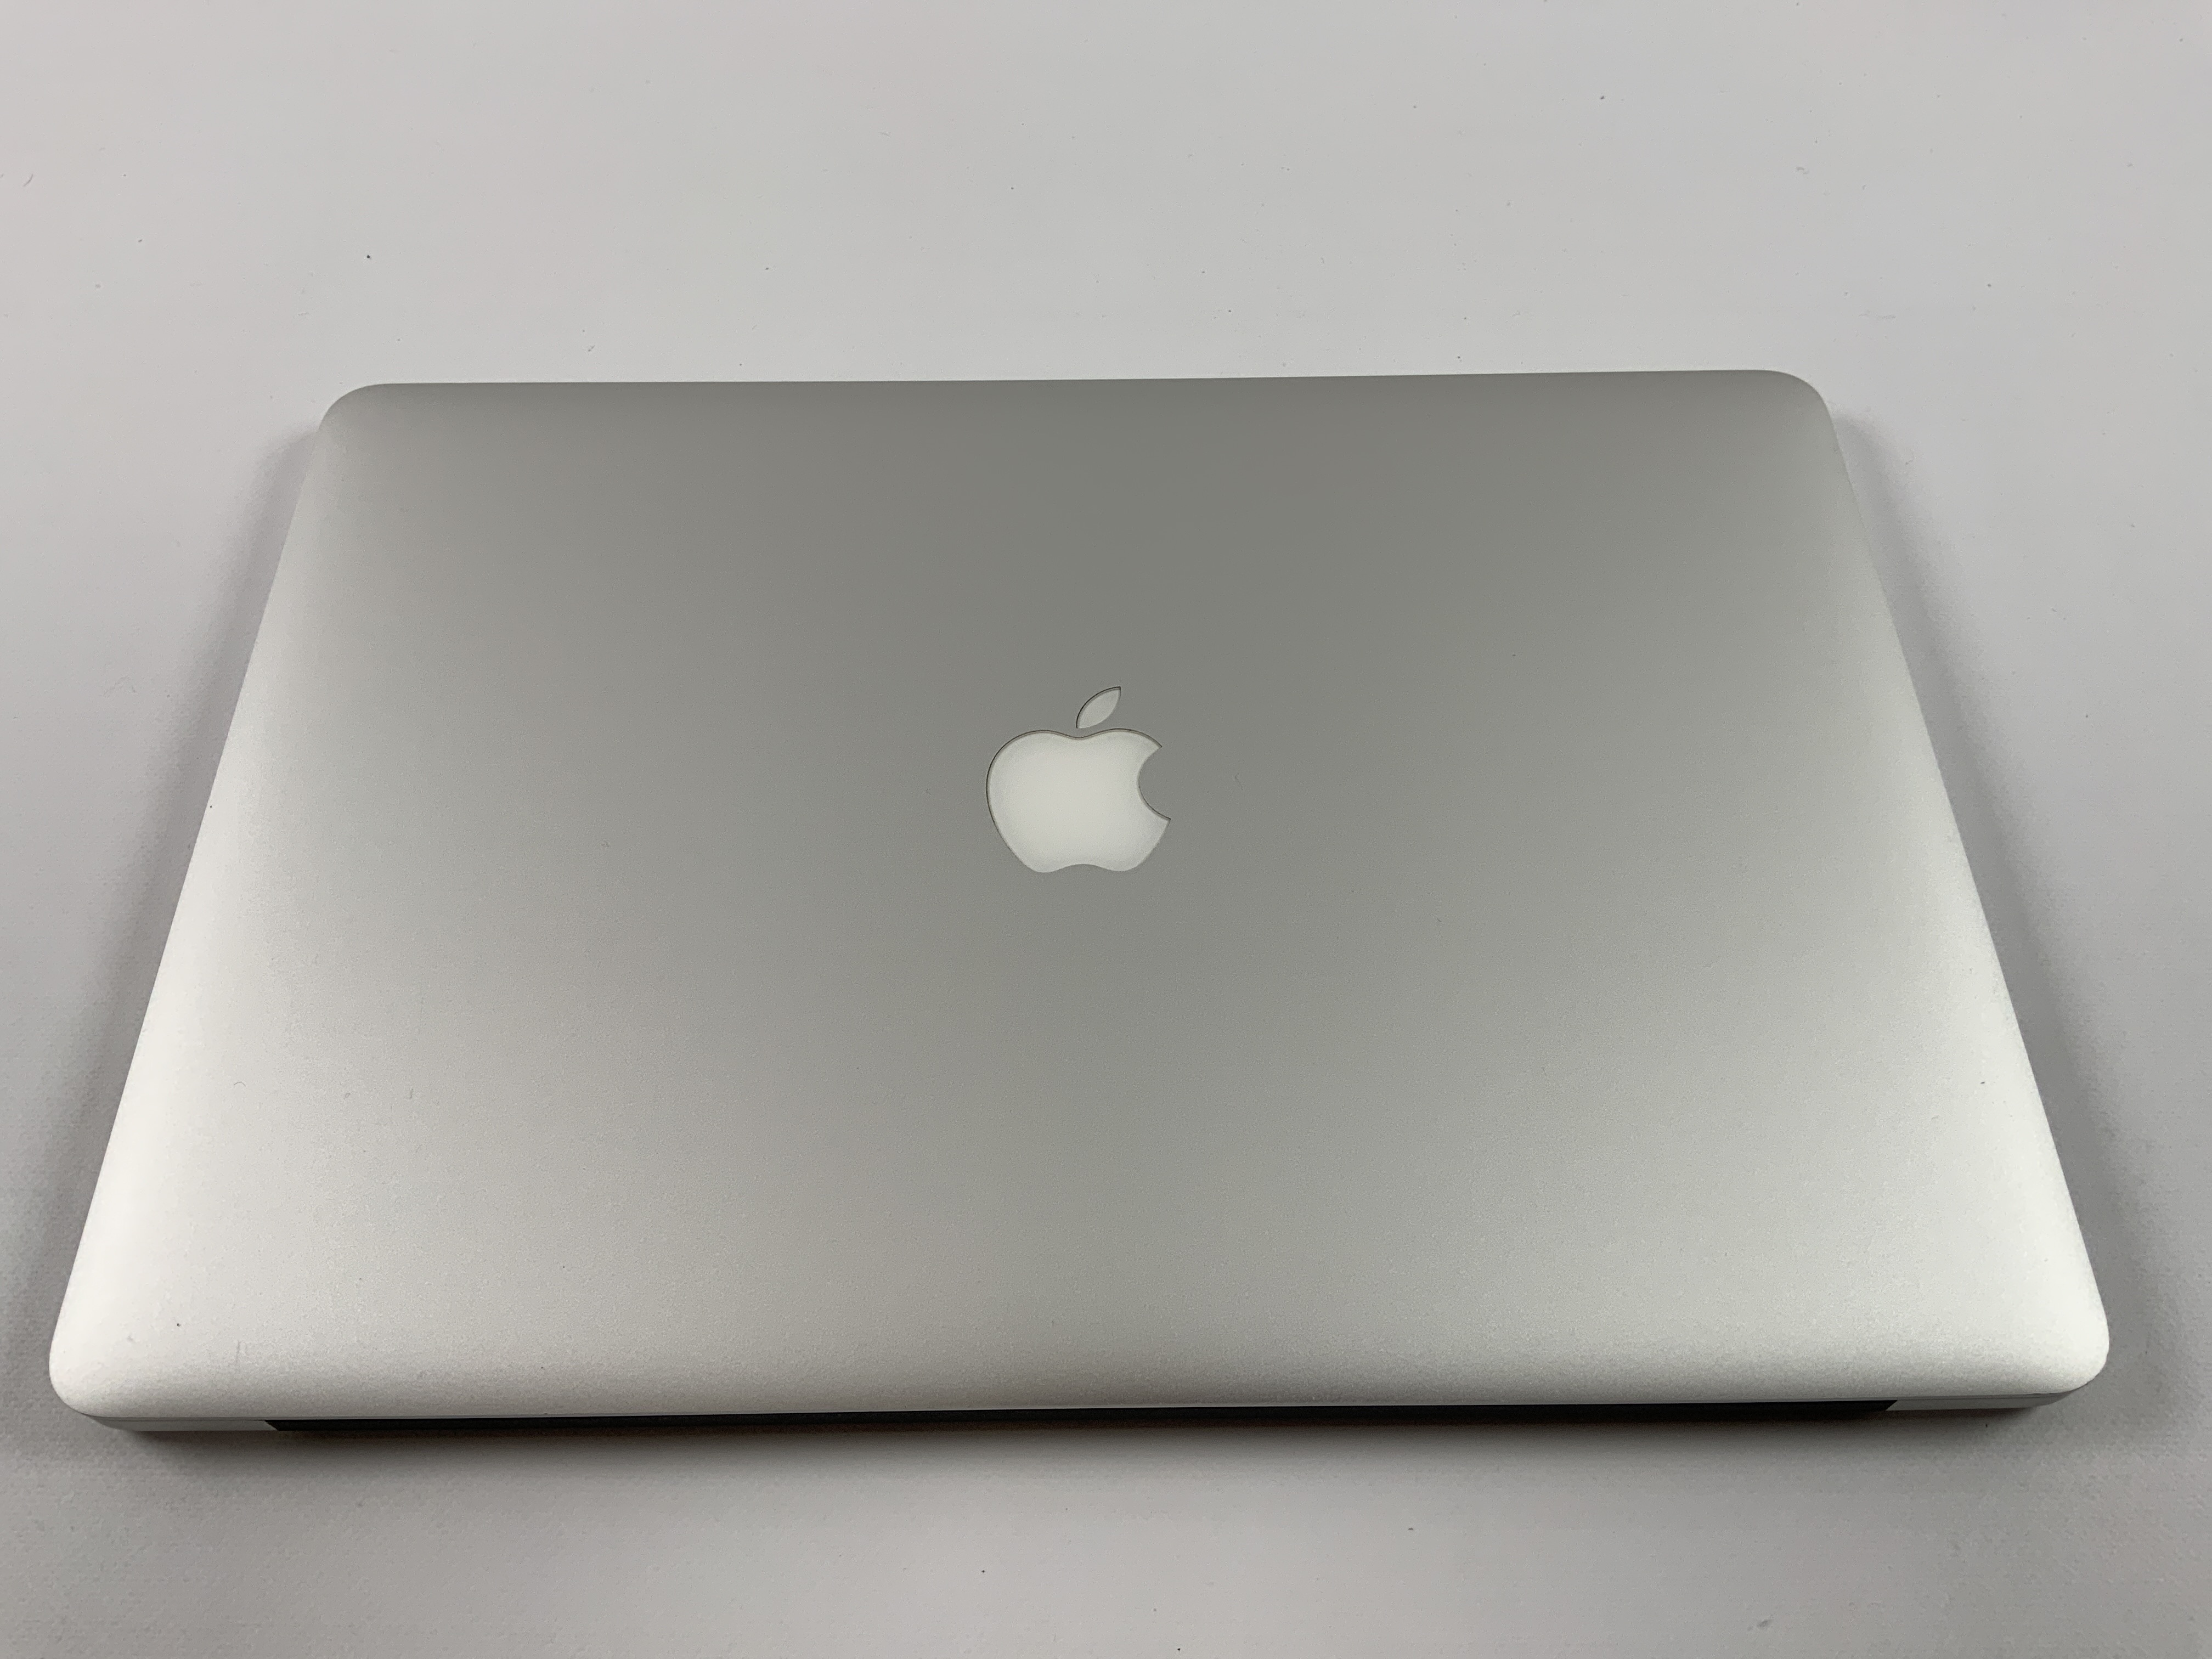 MacBook Pro Retina 15" Mid 2015 (Intel Quad-Core i7 2.2 GHz 16 GB RAM 256 GB SSD), Intel Quad-Core i7 2.2 GHz, 16 GB RAM, 256 GB SSD, obraz 4